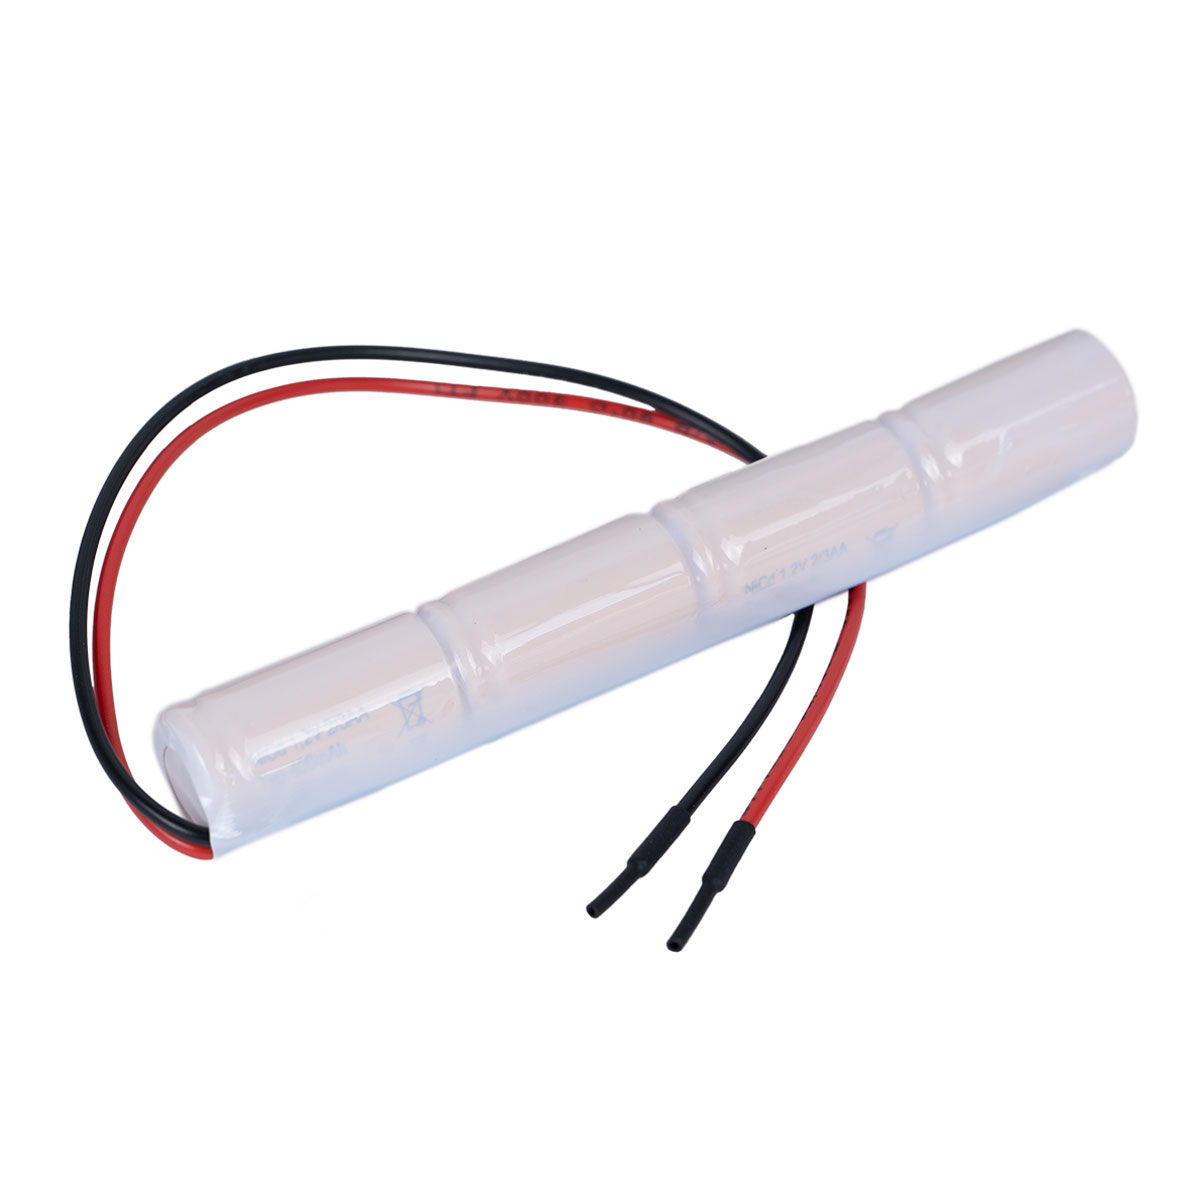 Akku Pack 4,8V 400mAh für Notbeleuchtung NiCd L4x1 2/3AA Hochtemperaturzellen Kabel 20cm